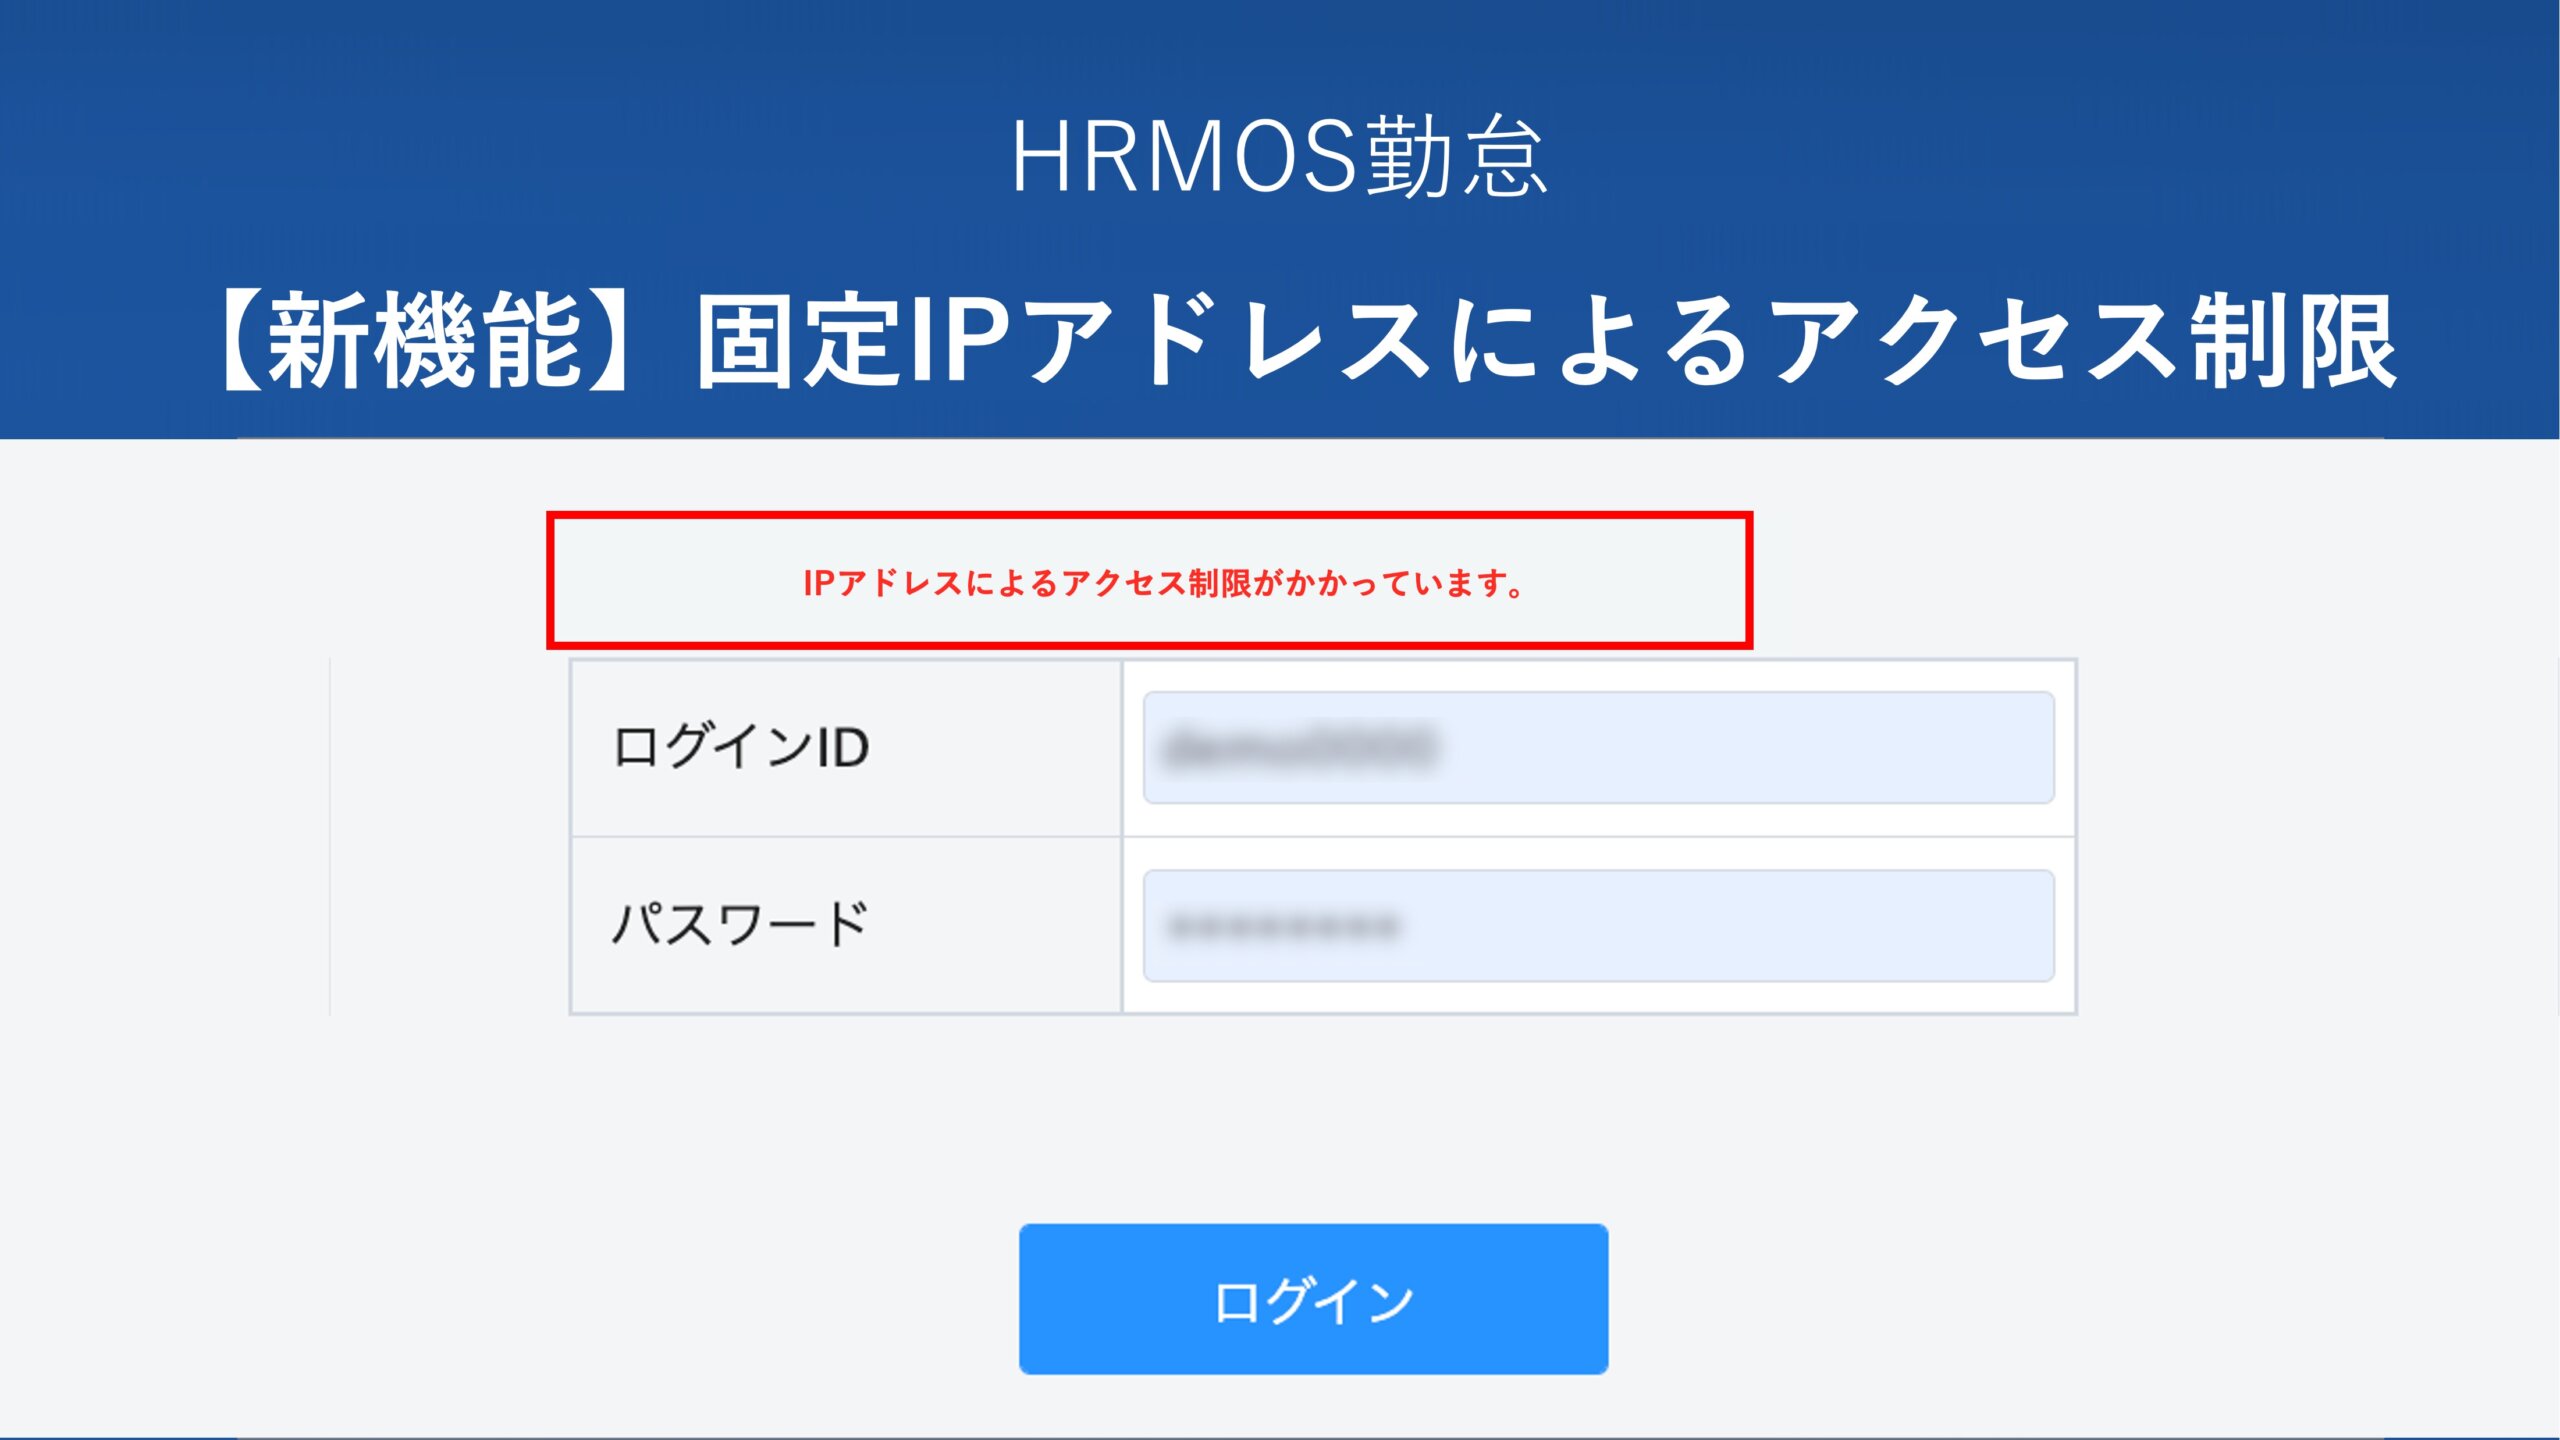 【新機能】固定IPアドレスによるアクセス制限機能をリリース │ HRMOS勤怠 by IEYASU